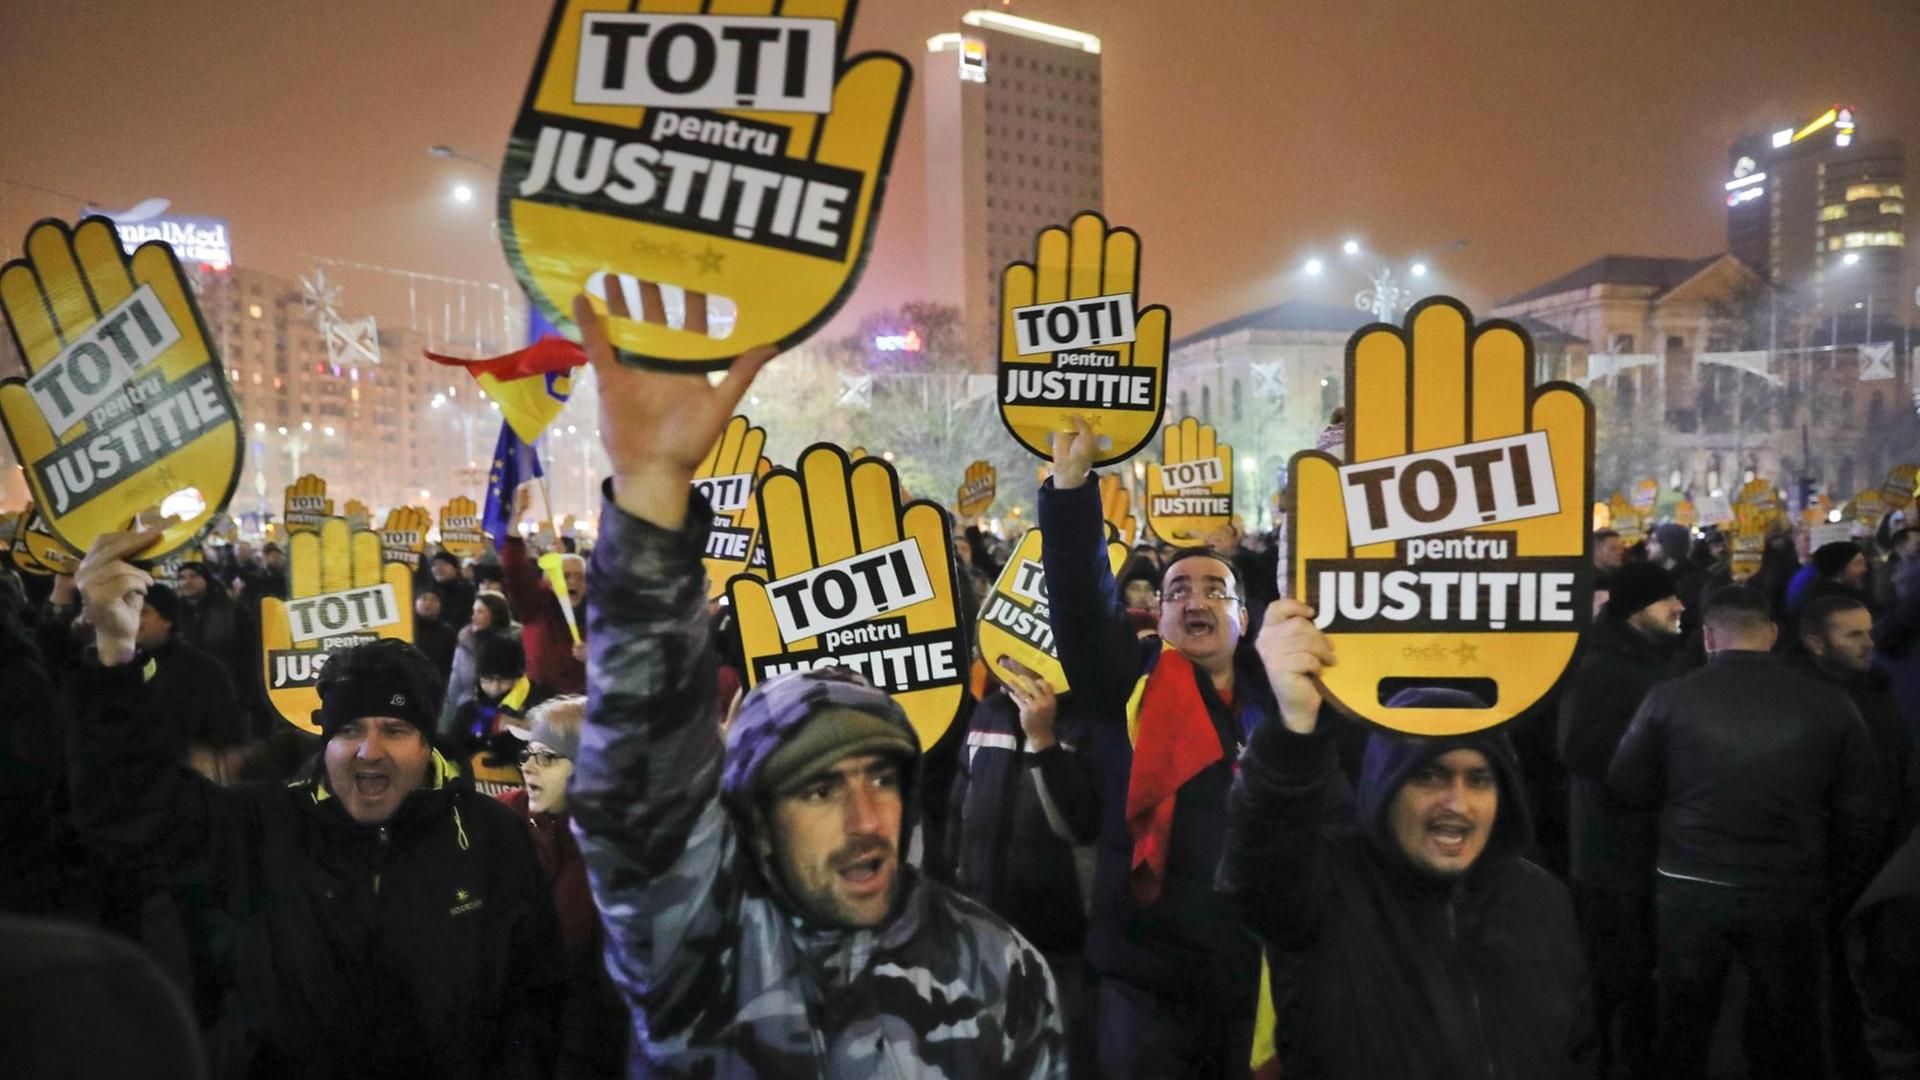 Demonstranten halten Plakate mit der Aufschrift "Alle für Gerechtigkeit" bei Straßenprotesten in Rumänien in die Höhe.